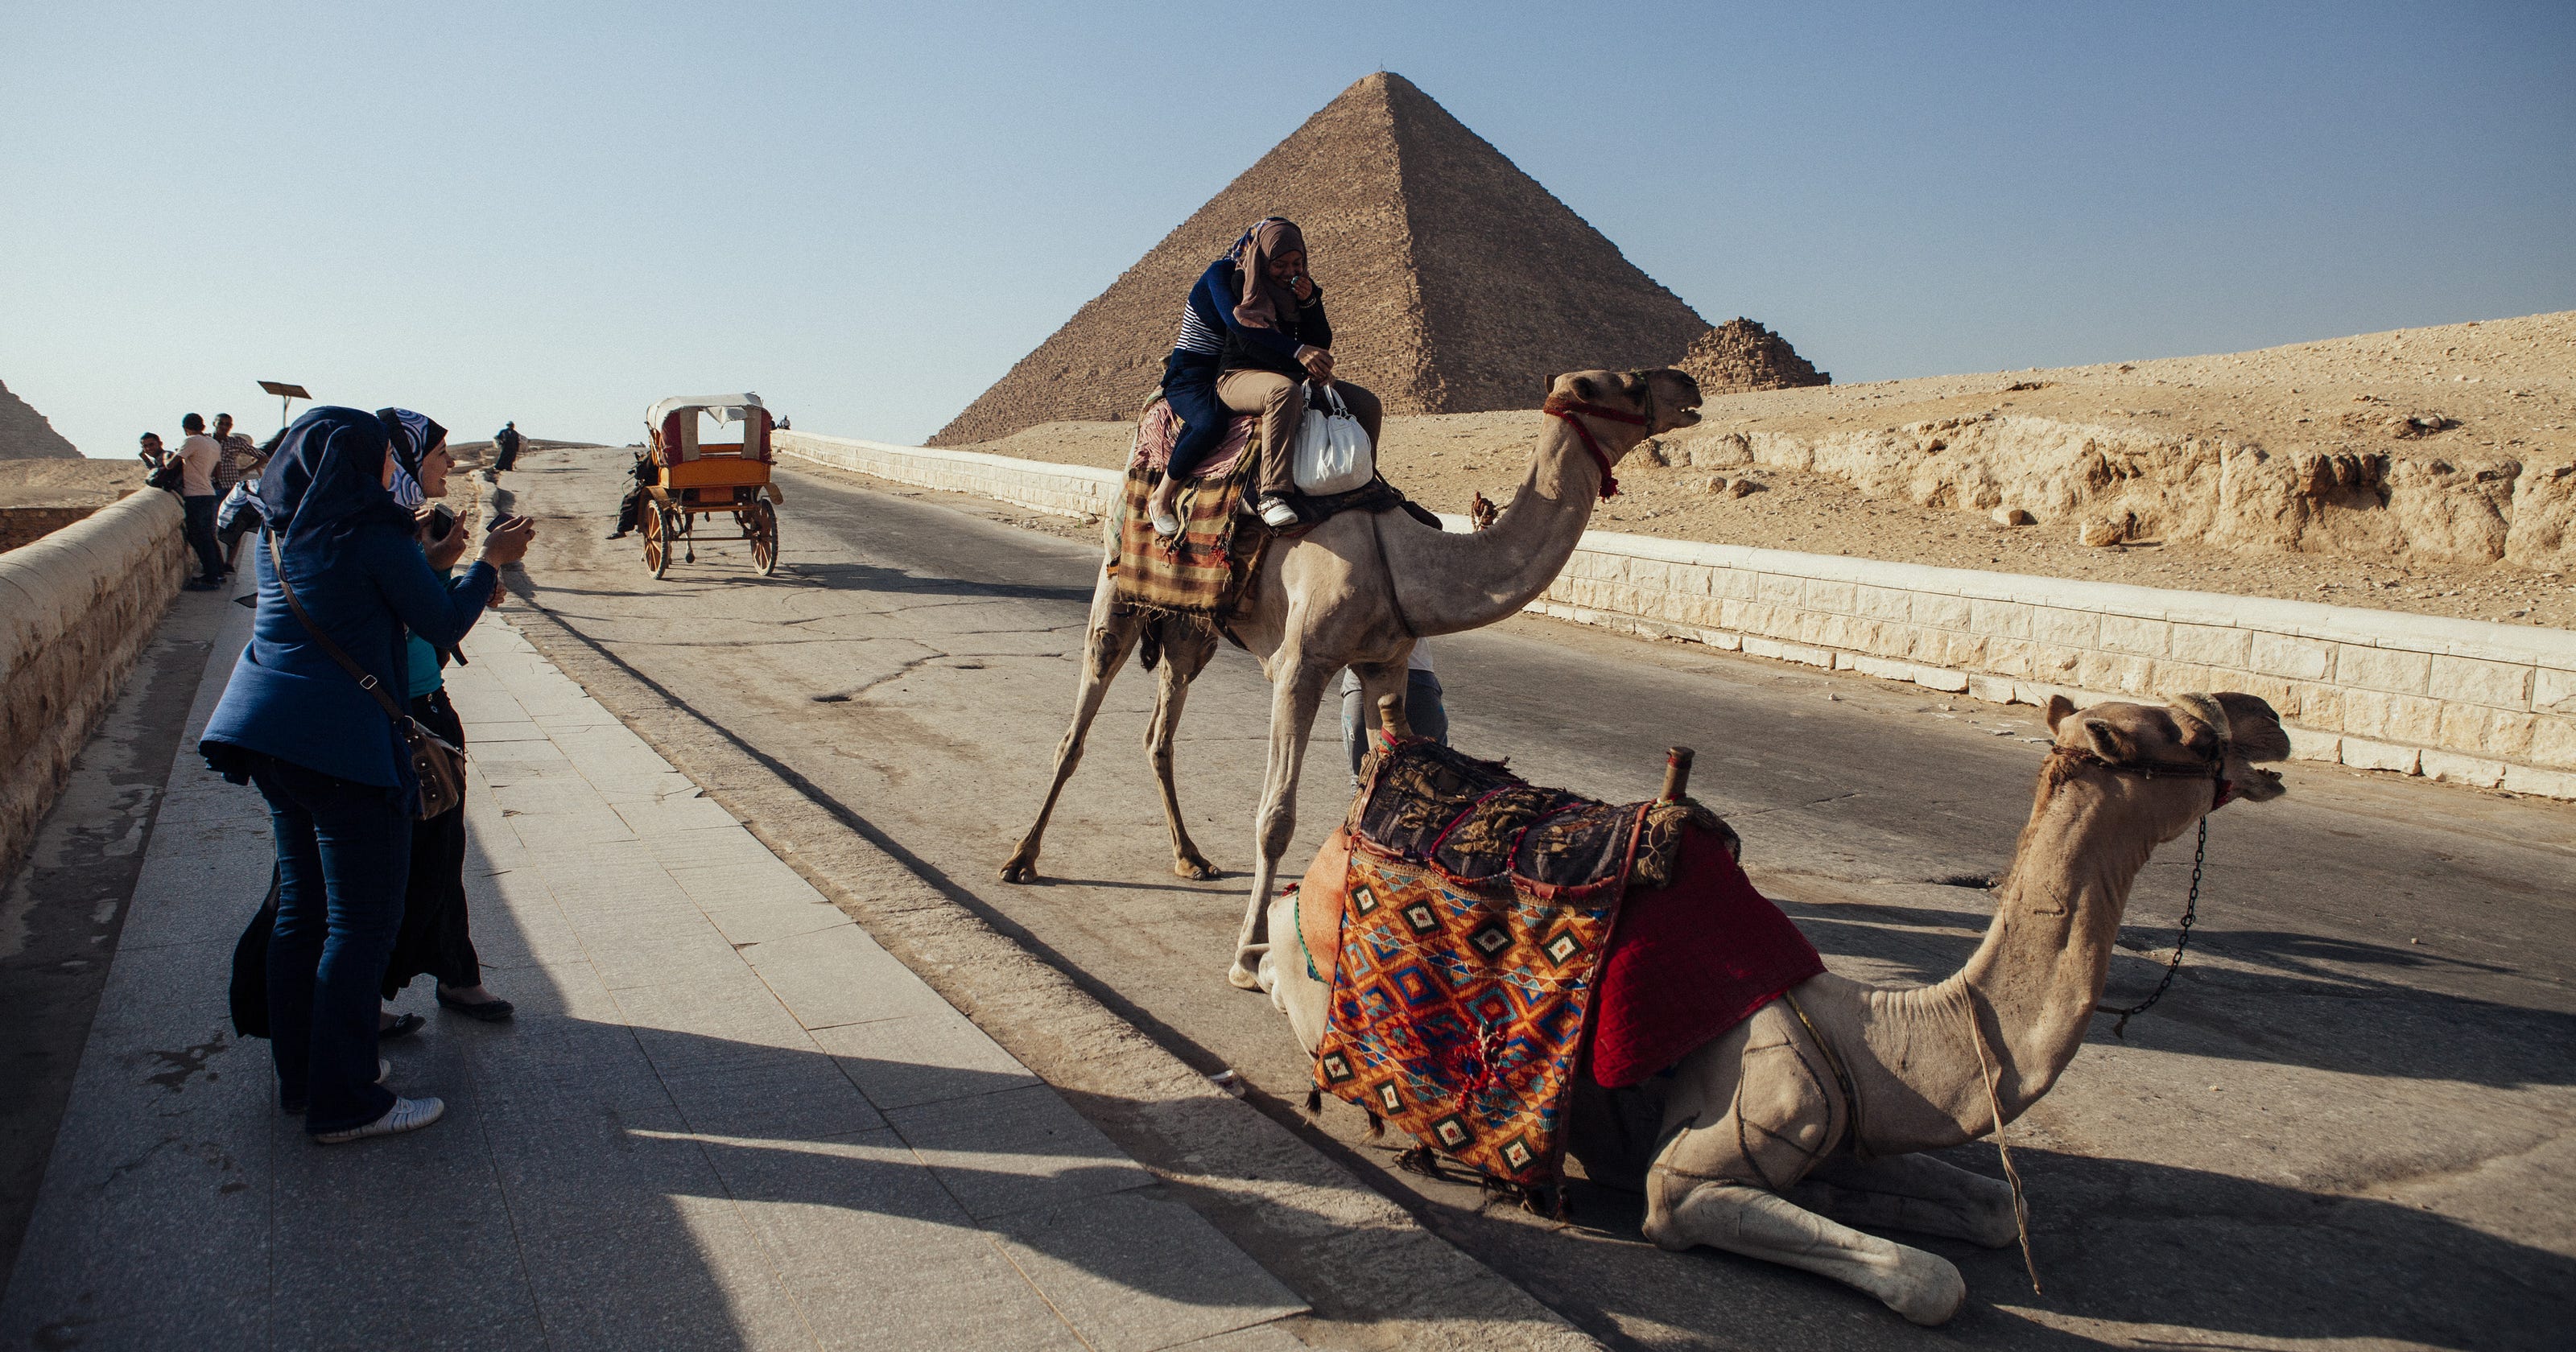 private tour operators in egypt